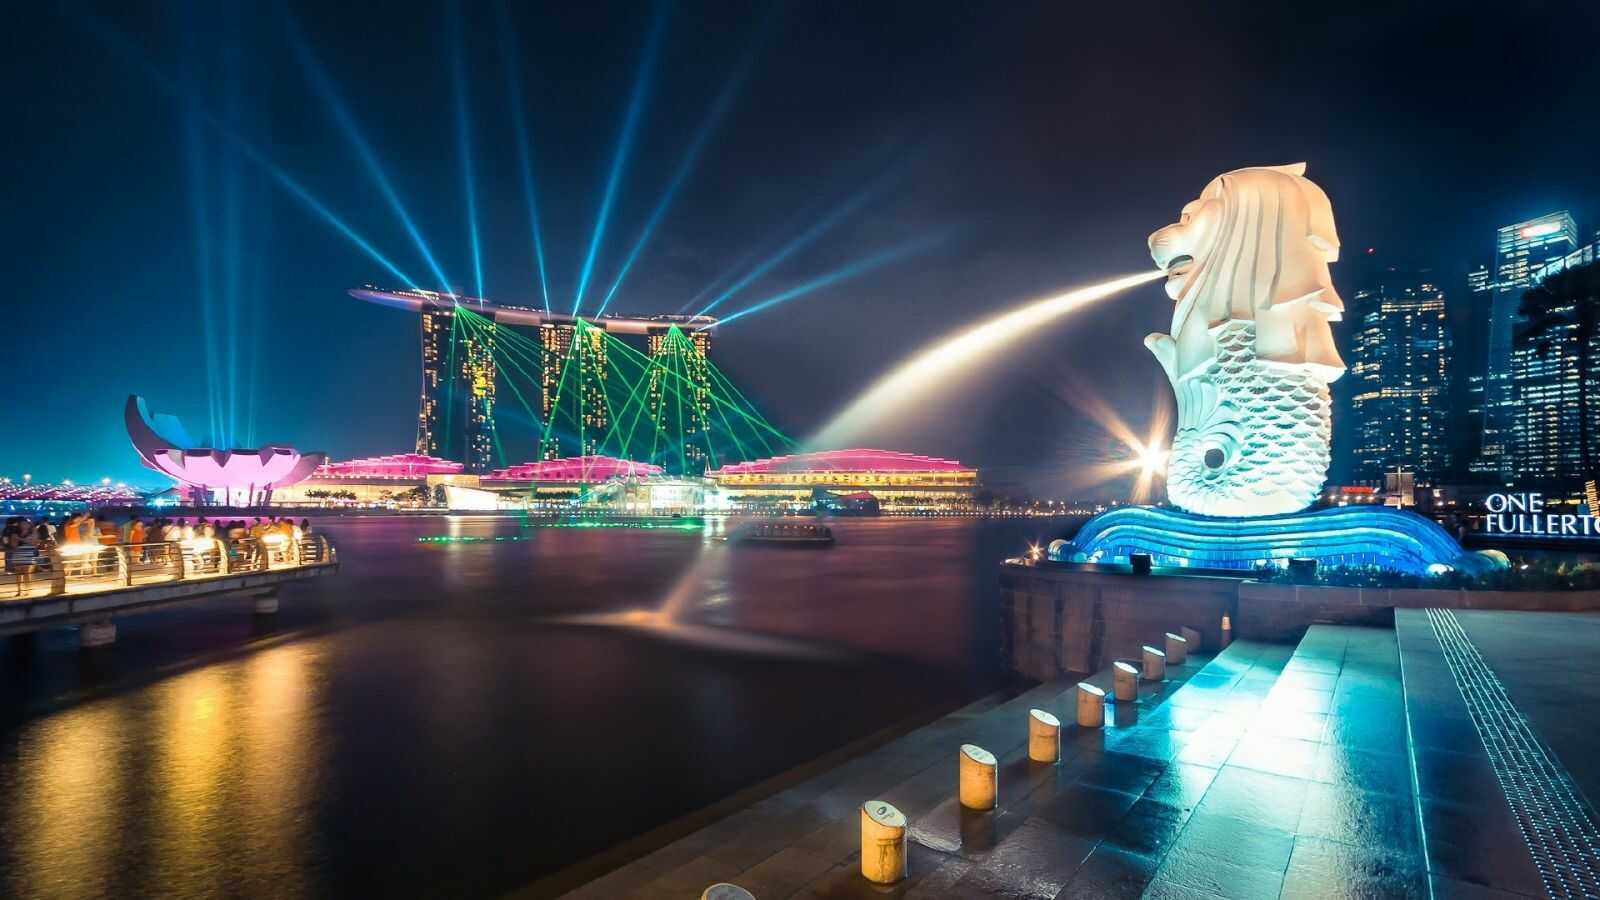 Du lịch Châu Á - Singapore - Malaysia - Indonesia 6 ngày 5 đêm từ Sài Gòn